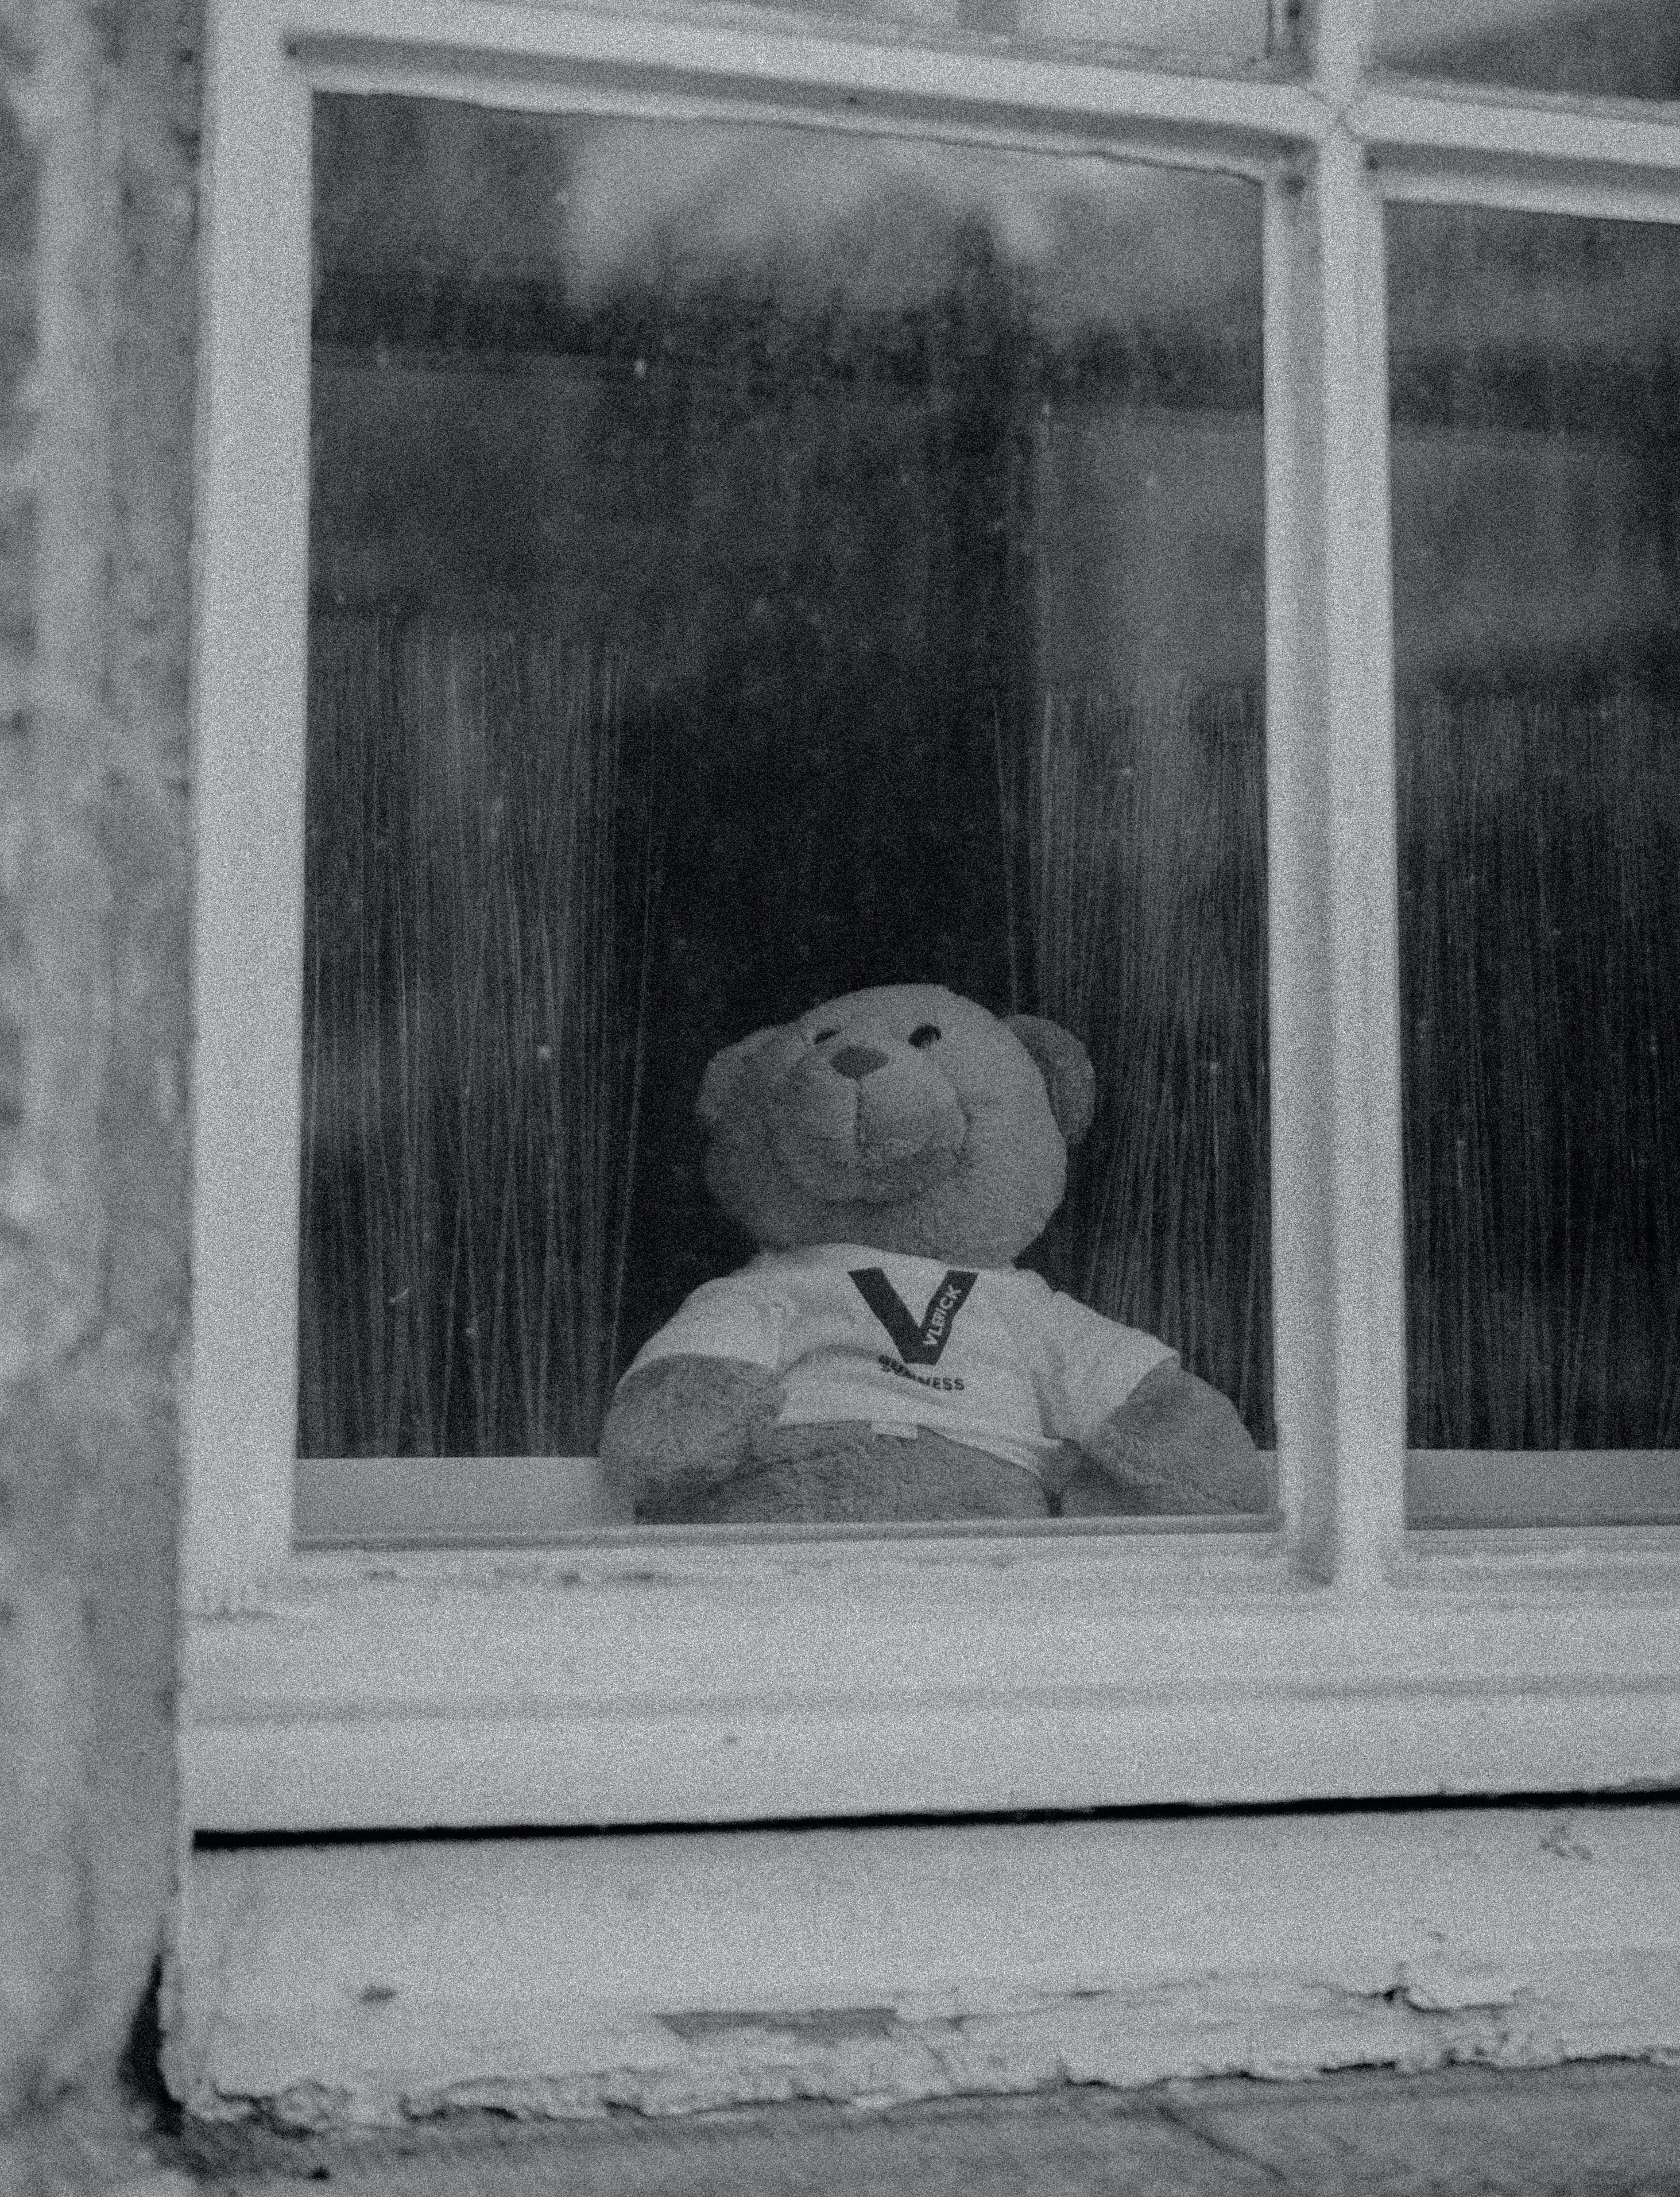 Ein Teddy schaut aus dem Fenster, schwarz-weißes Bild.